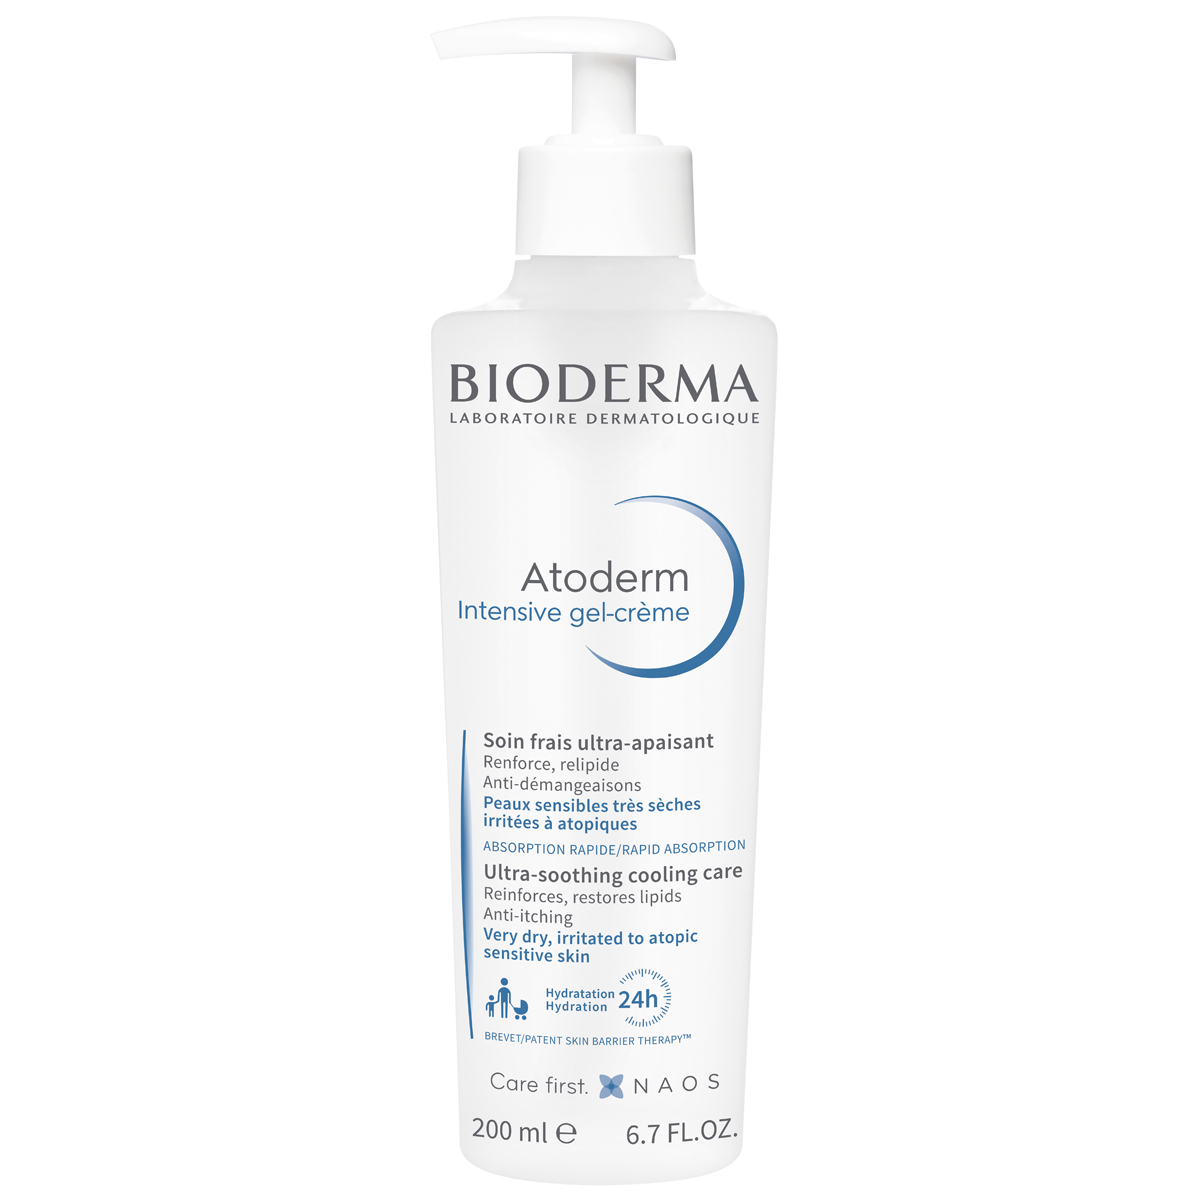 Bioderma Гель-крем Интенсив, 200 мл (Bioderma, Atoderm) уход за телом bioderma питательный бальзам для сухой и атопичной кожи тела atoderm pp